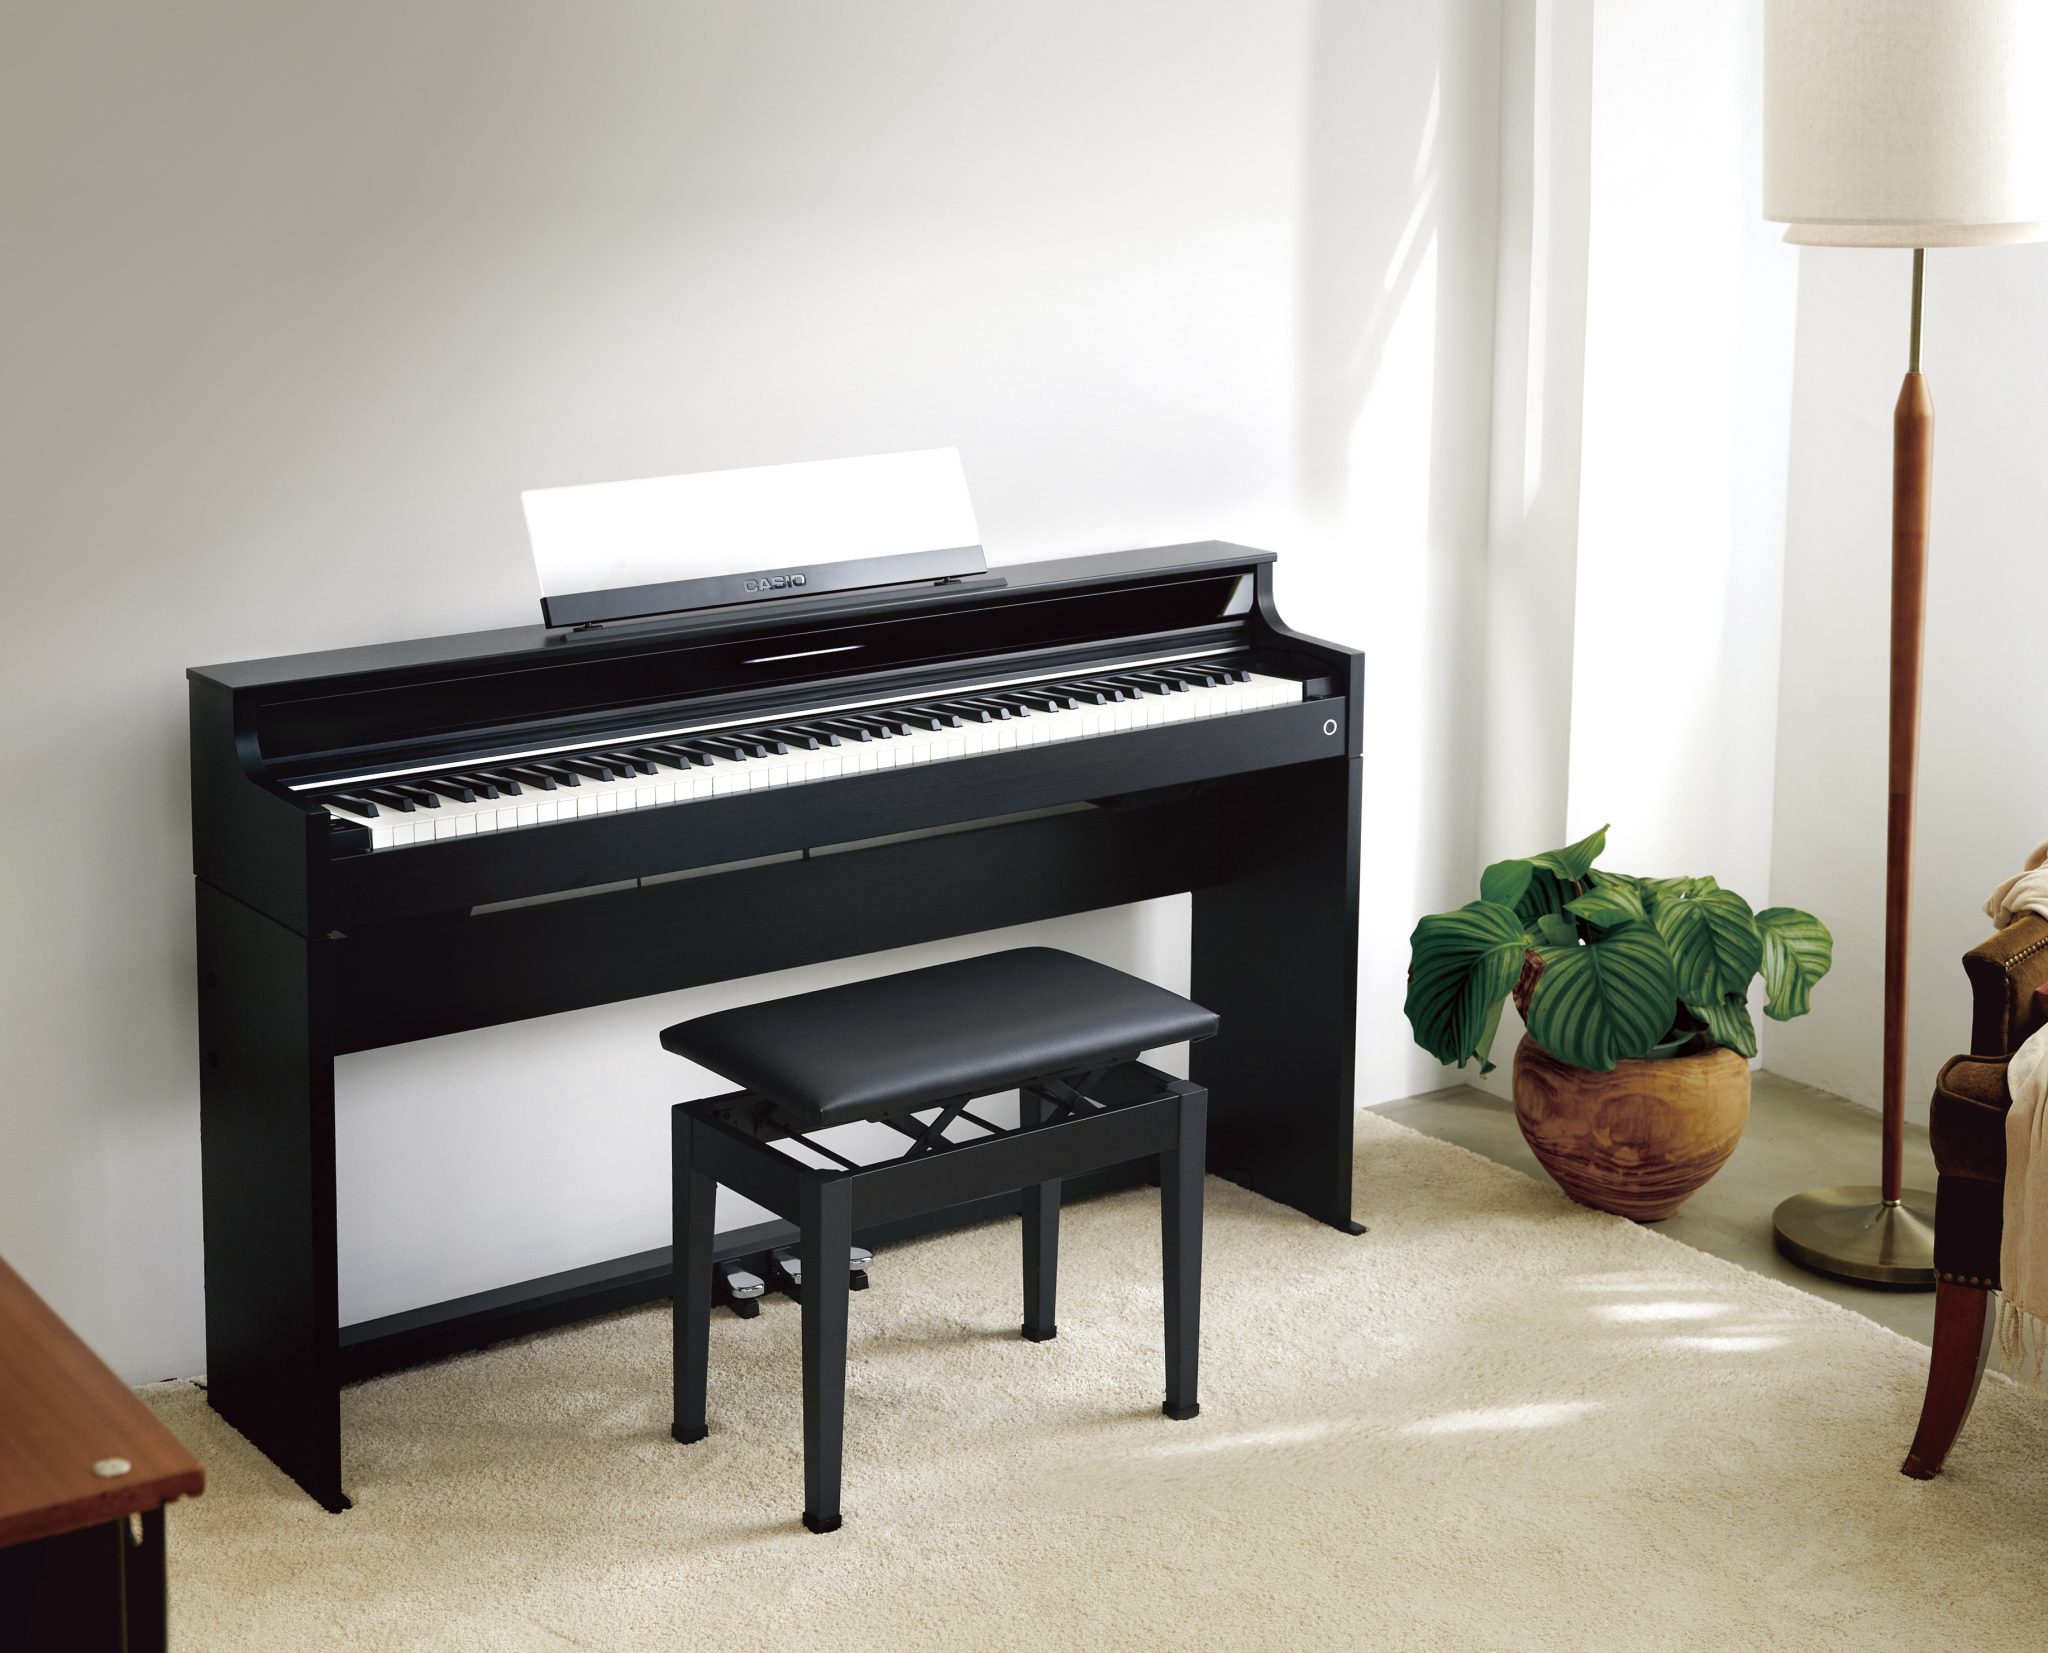 電子ピアノメーカーとして人気のCASIOより新発売のAP-S5000GP/Sをご紹介いたします。ピアノタッチにこだわりたいけど、スリムな形状のピアノをお探しの方にぴったりな木製鍵盤搭載の電子ピアノとなっております。 CONTENTS自然な響きと弾き心地でピアノライフを自由に、軽やかに彩る。カシオ×島 […]